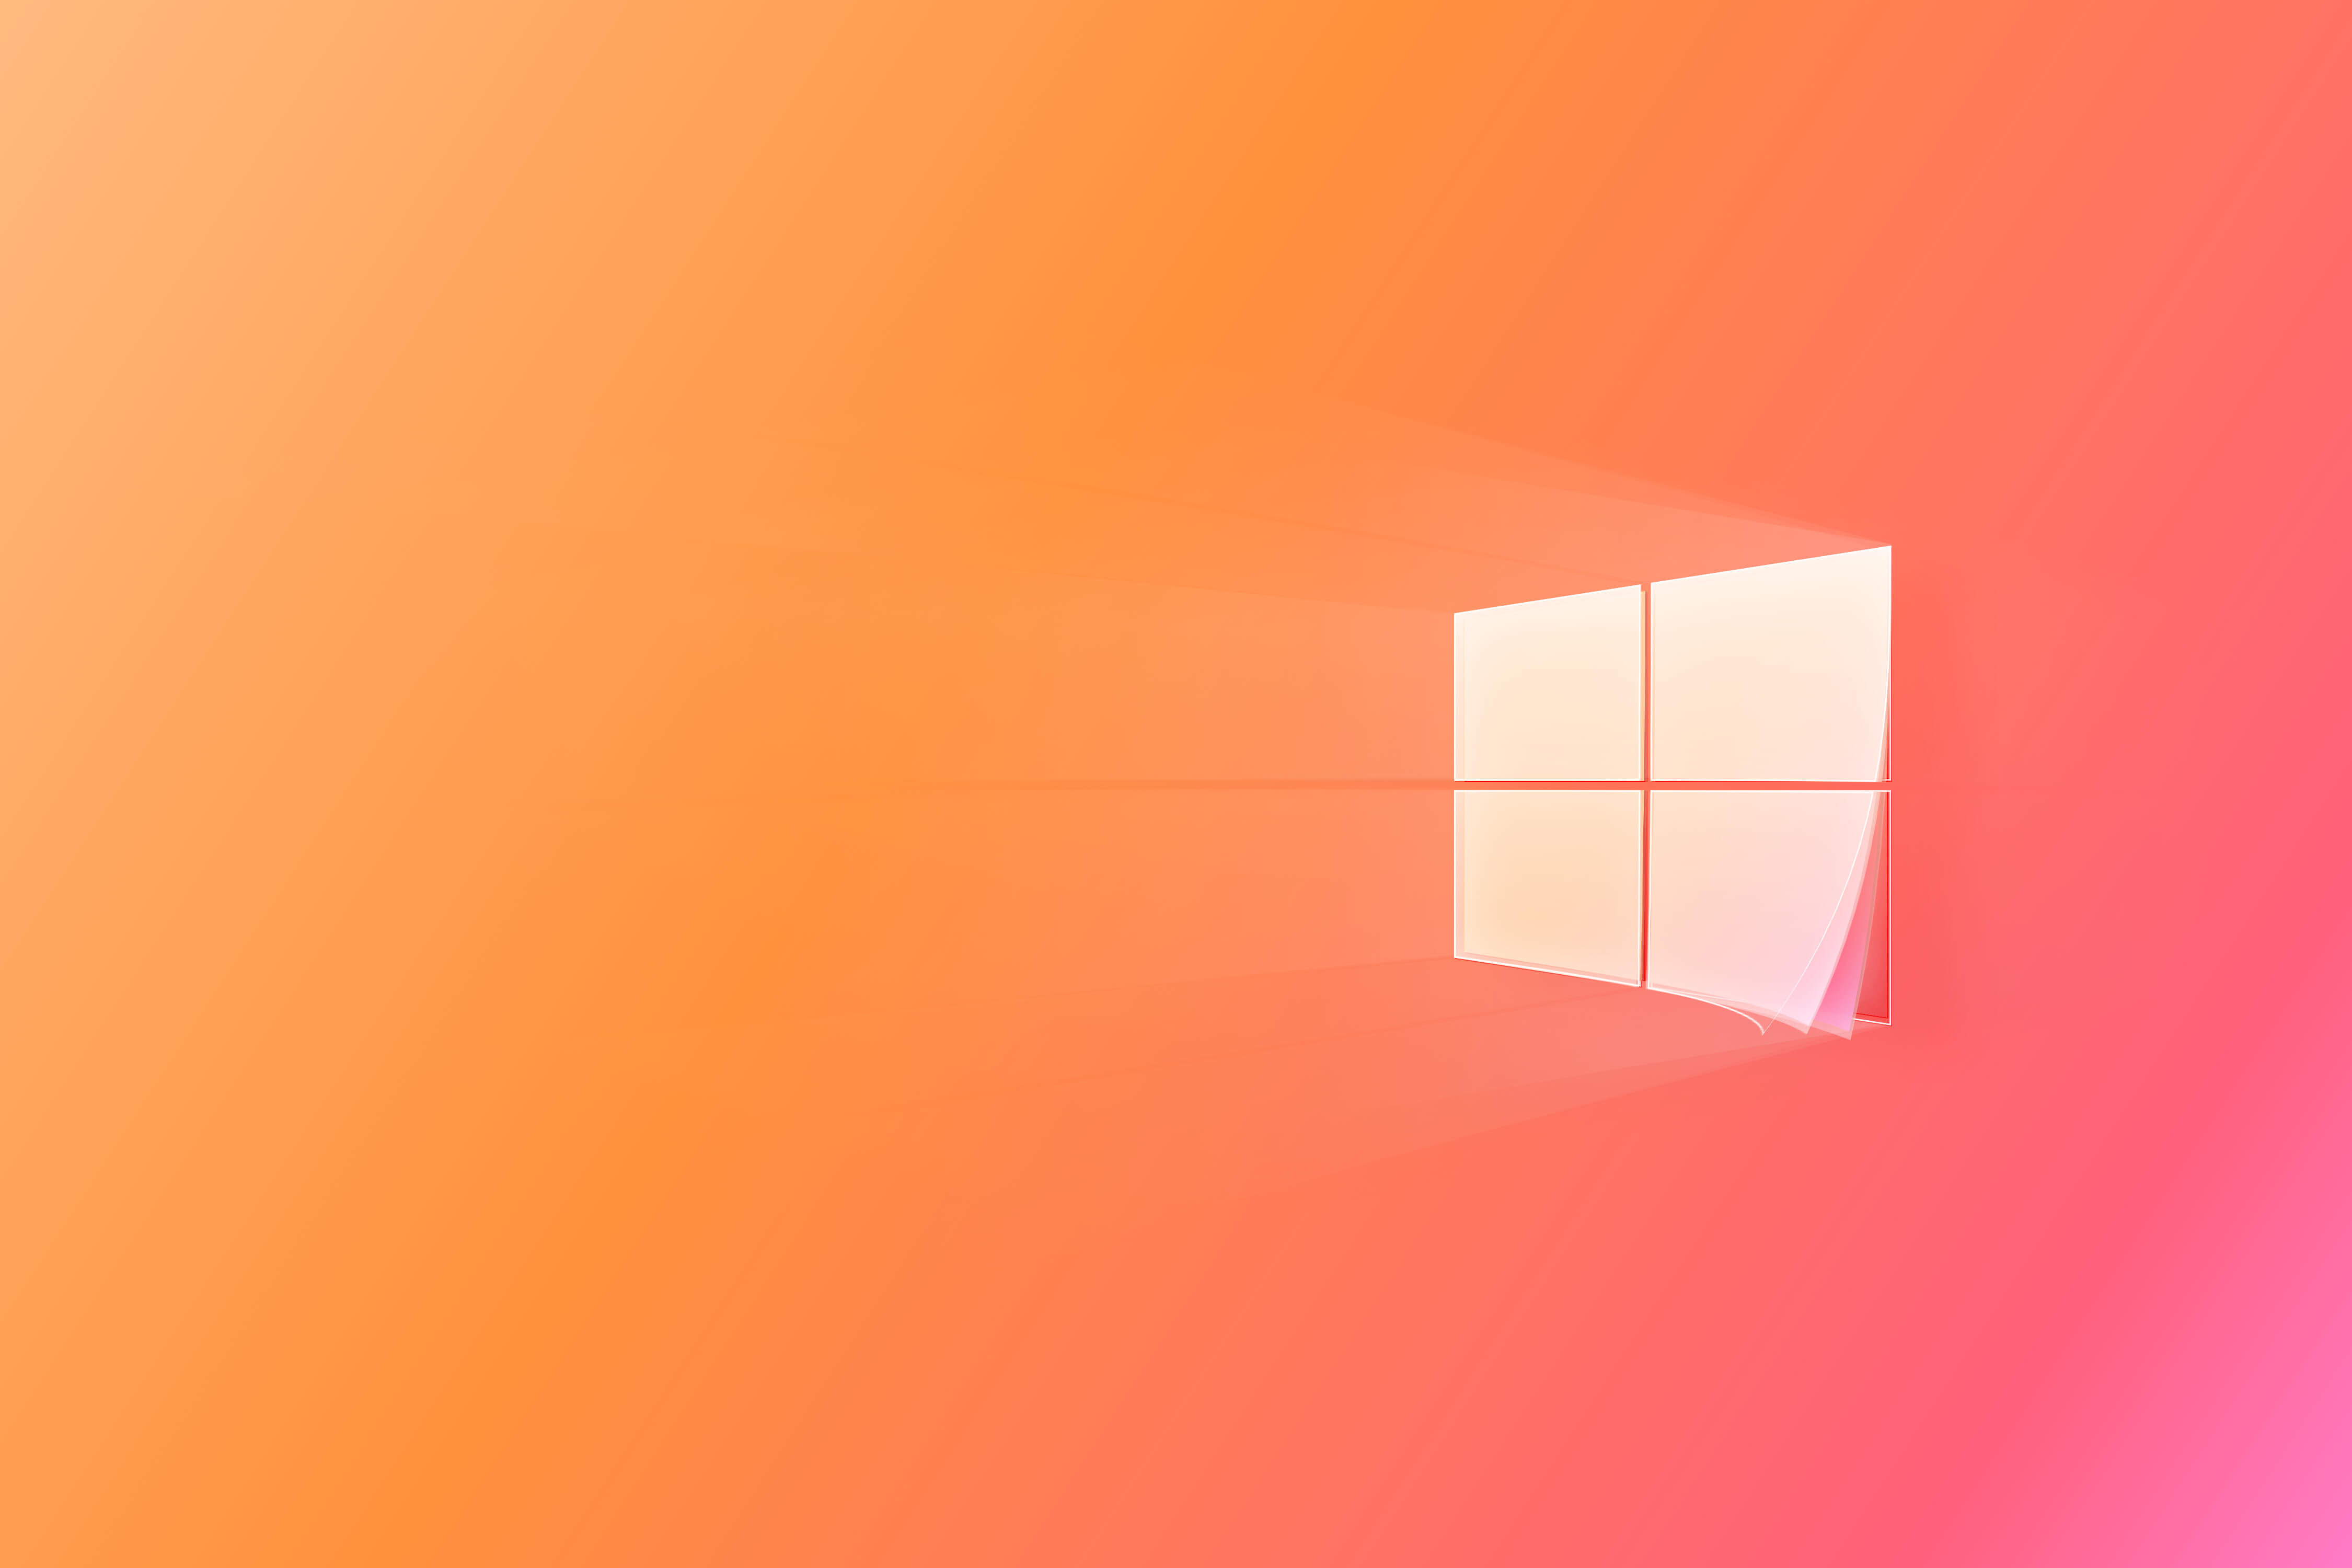 Hình nền Windows 10 classic: Cùng trở về thời kỳ cổ điển với hình nền Windows 10 classic. Hình ảnh này sẽ mang lại cho bạn sự độc đáo và đặc biệt khi sử dụng máy tính của bạn. Với những nét cổ điển và đậm chất thập niên 90, hình nền Windows 10 classic sẽ làm cho máy tính của bạn trở nên độc đáo và tinh tế hơn.